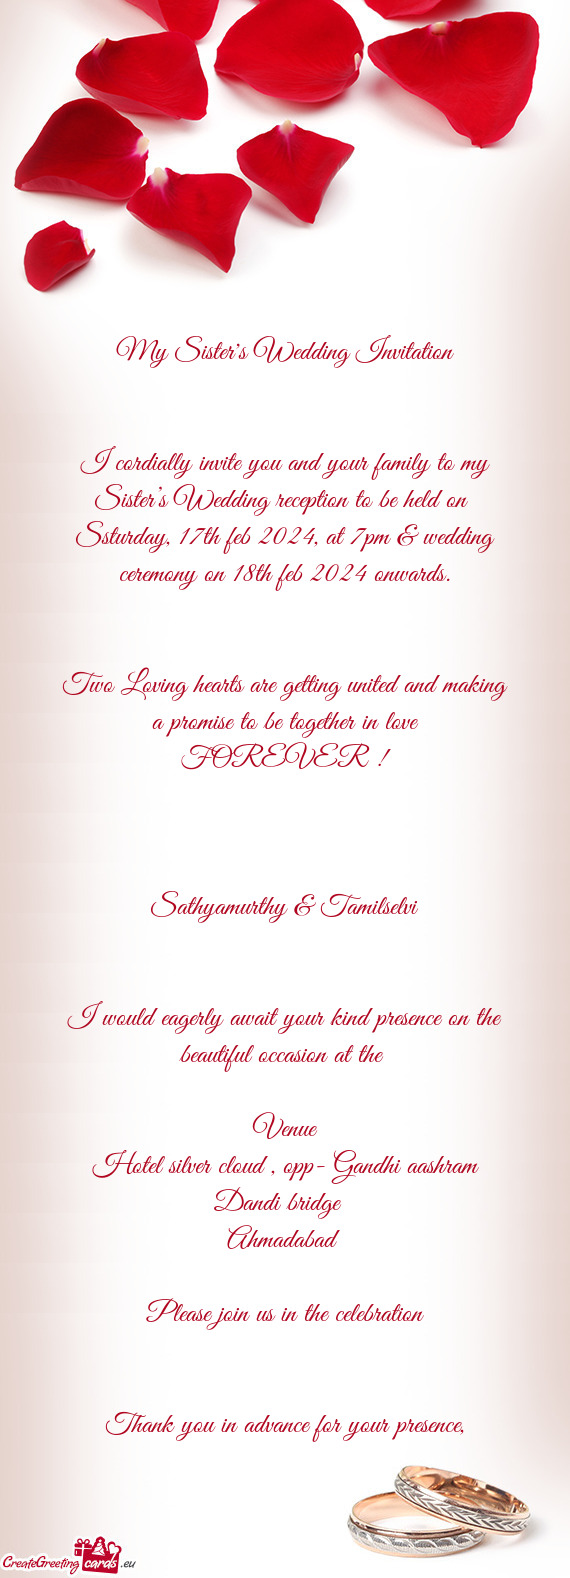 Ssturday, 17th feb 2024, at 7pm & wedding ceremony on 18th feb 2024 onwards